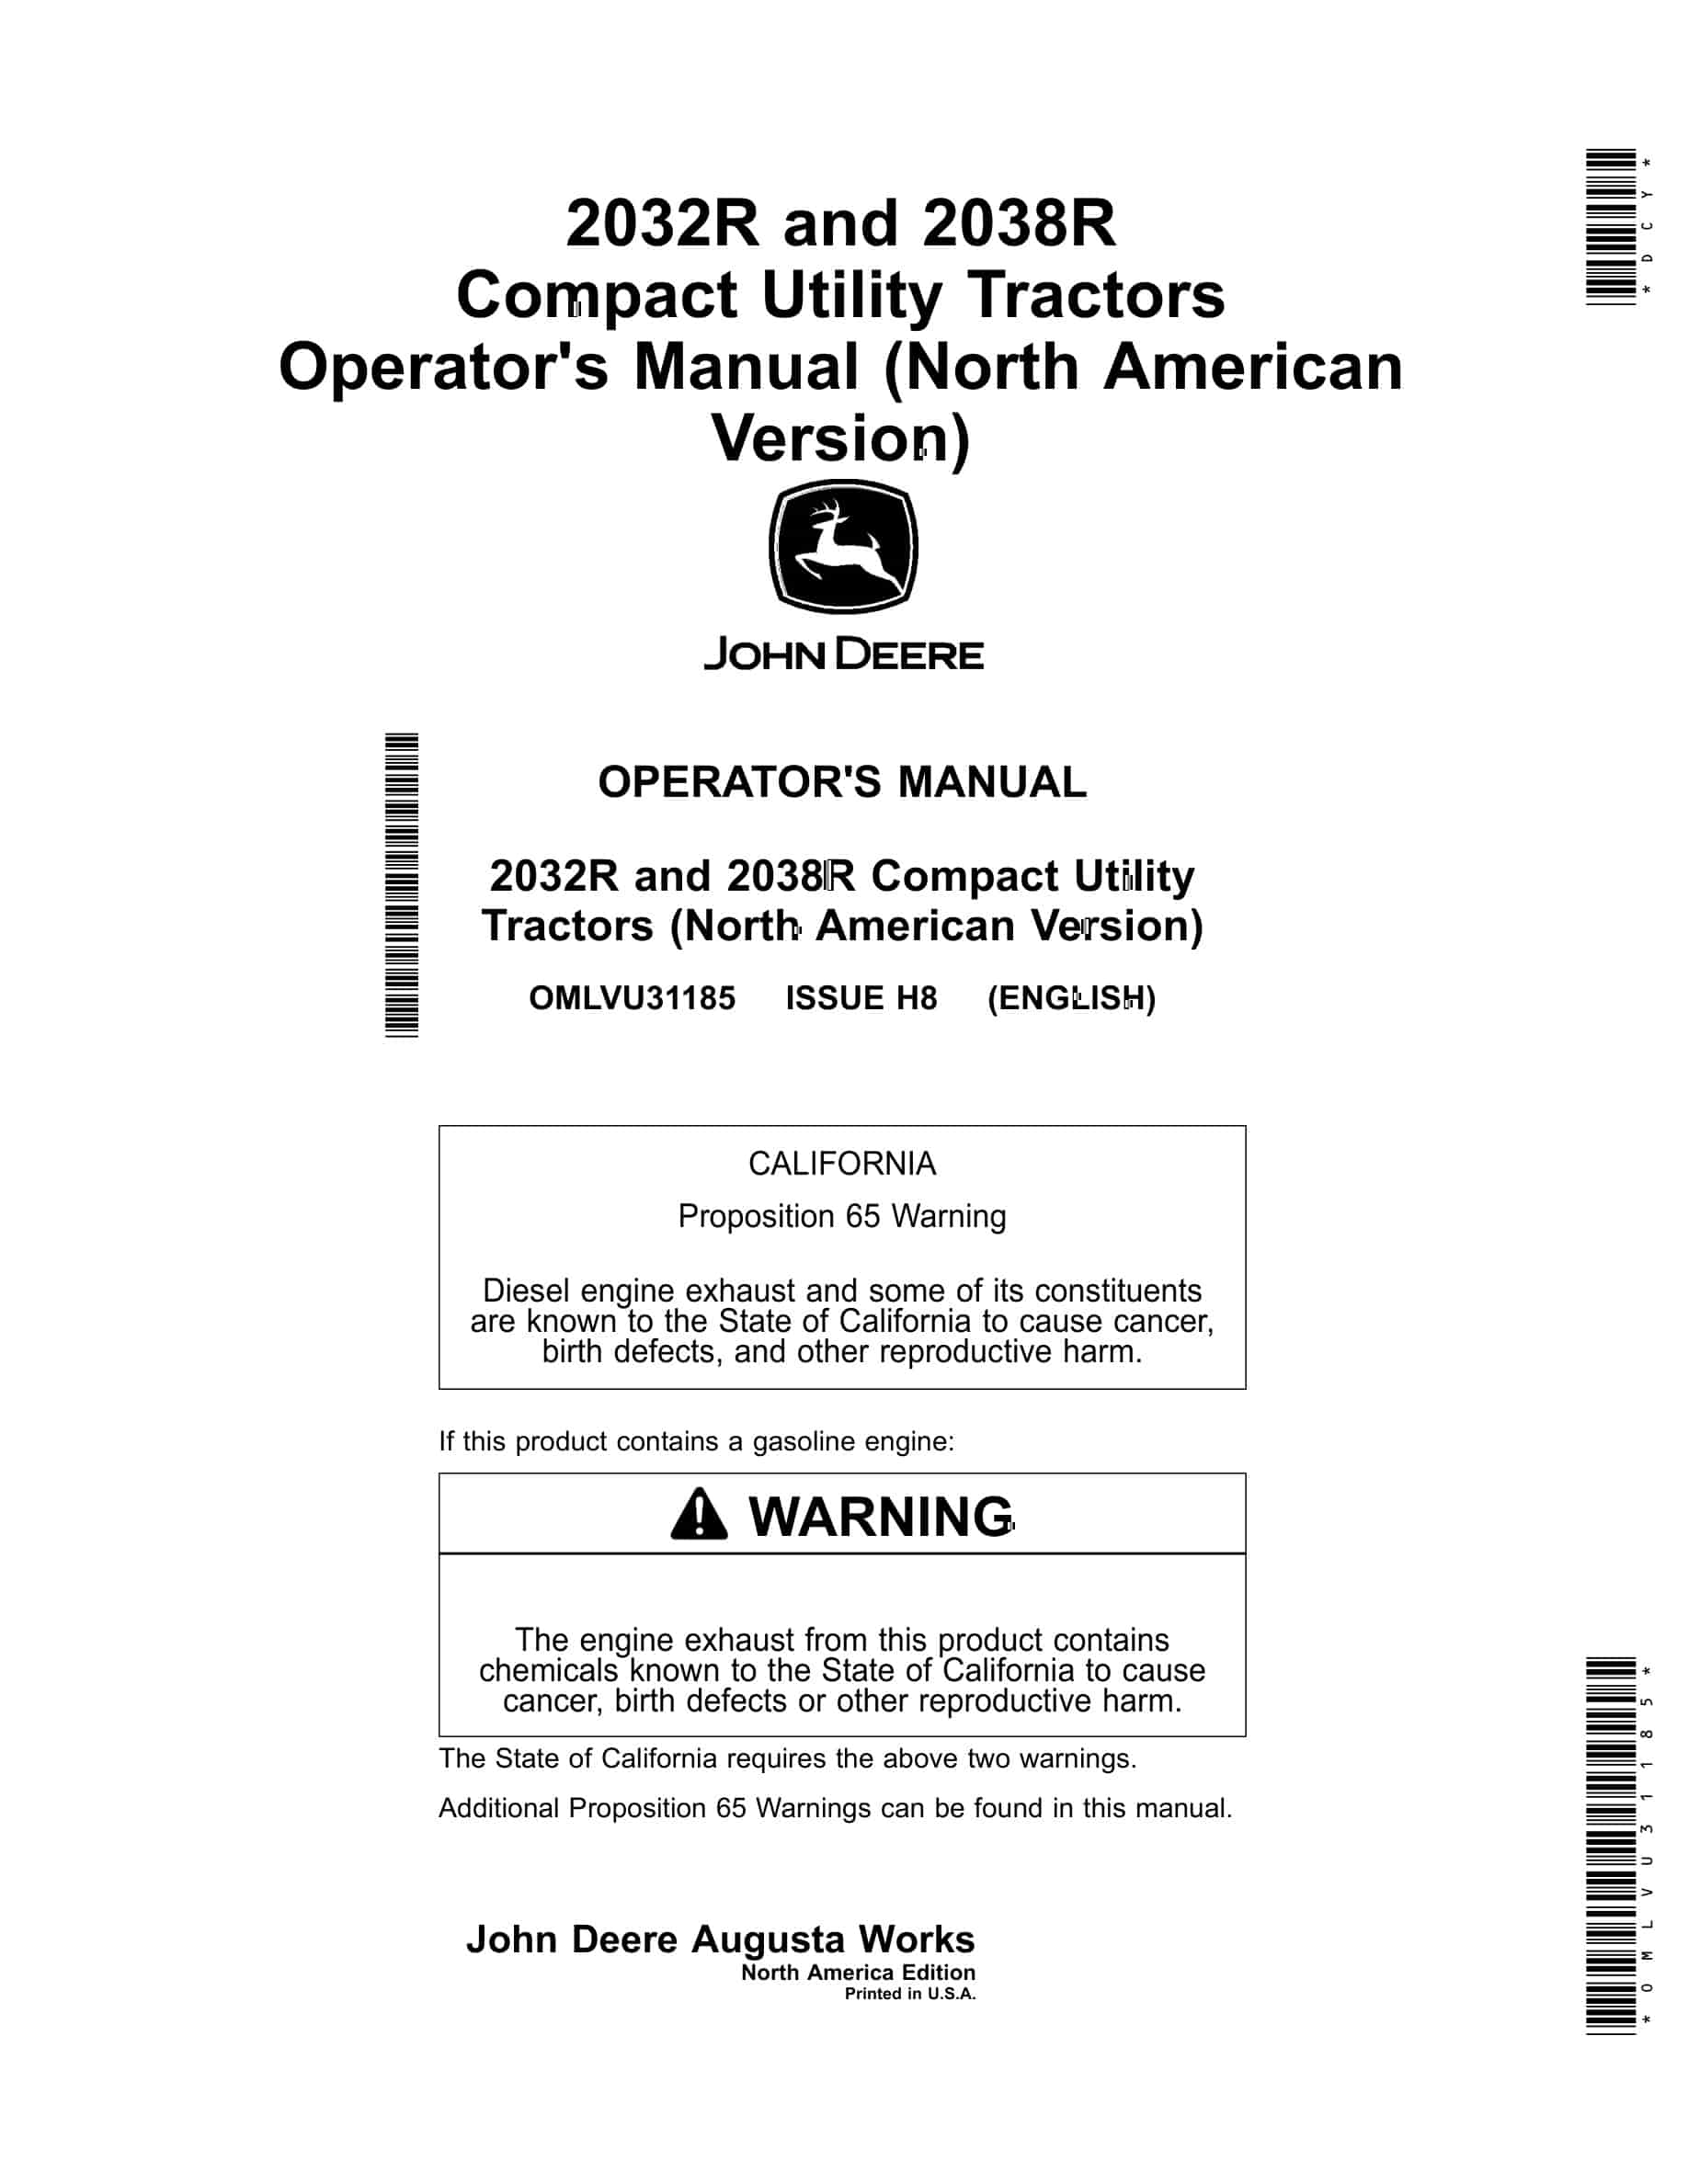 John Deere 2032r And 2038r Compact Utility Tractors Operator Manuals OMLVU31185-1